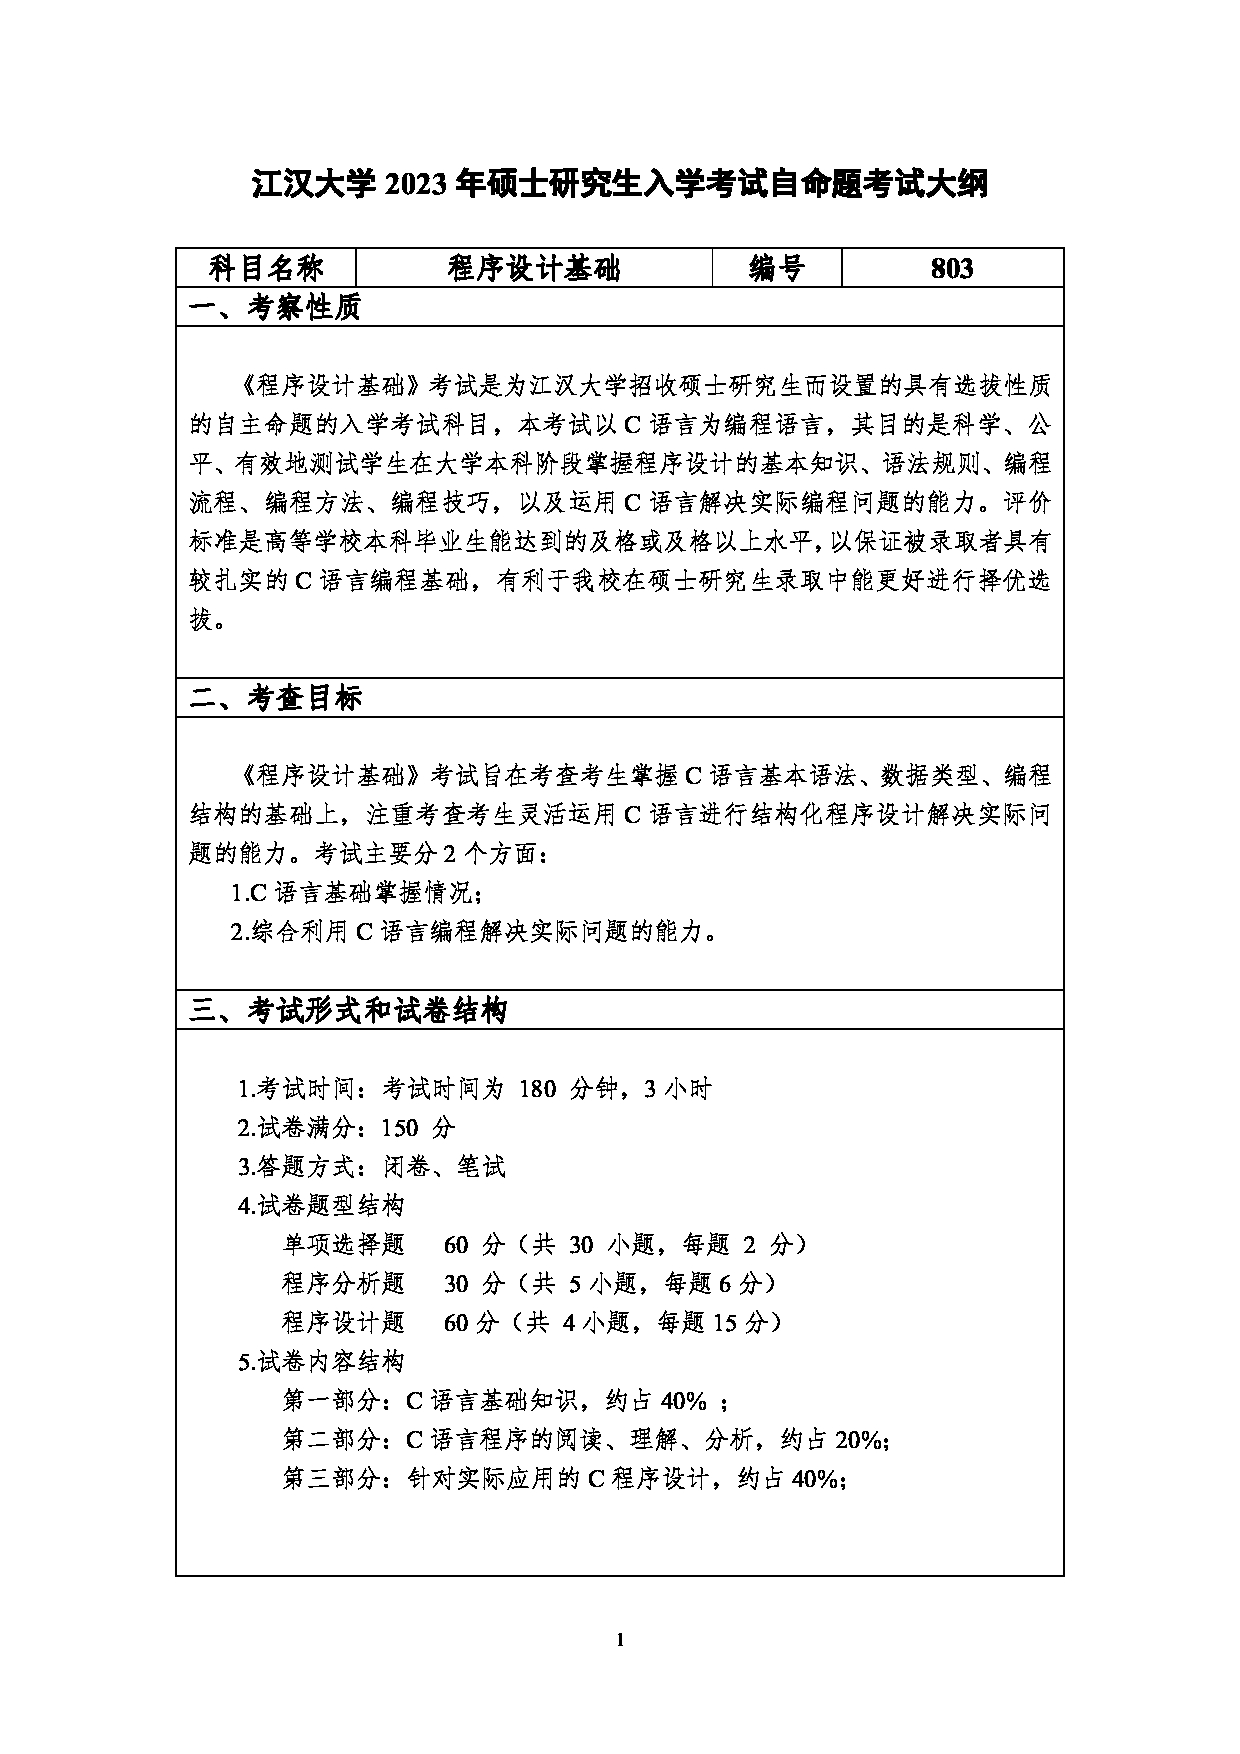 2023考研大纲：江汉大学2023年考研自命题科目 803程序设计基础 考试大纲第1页